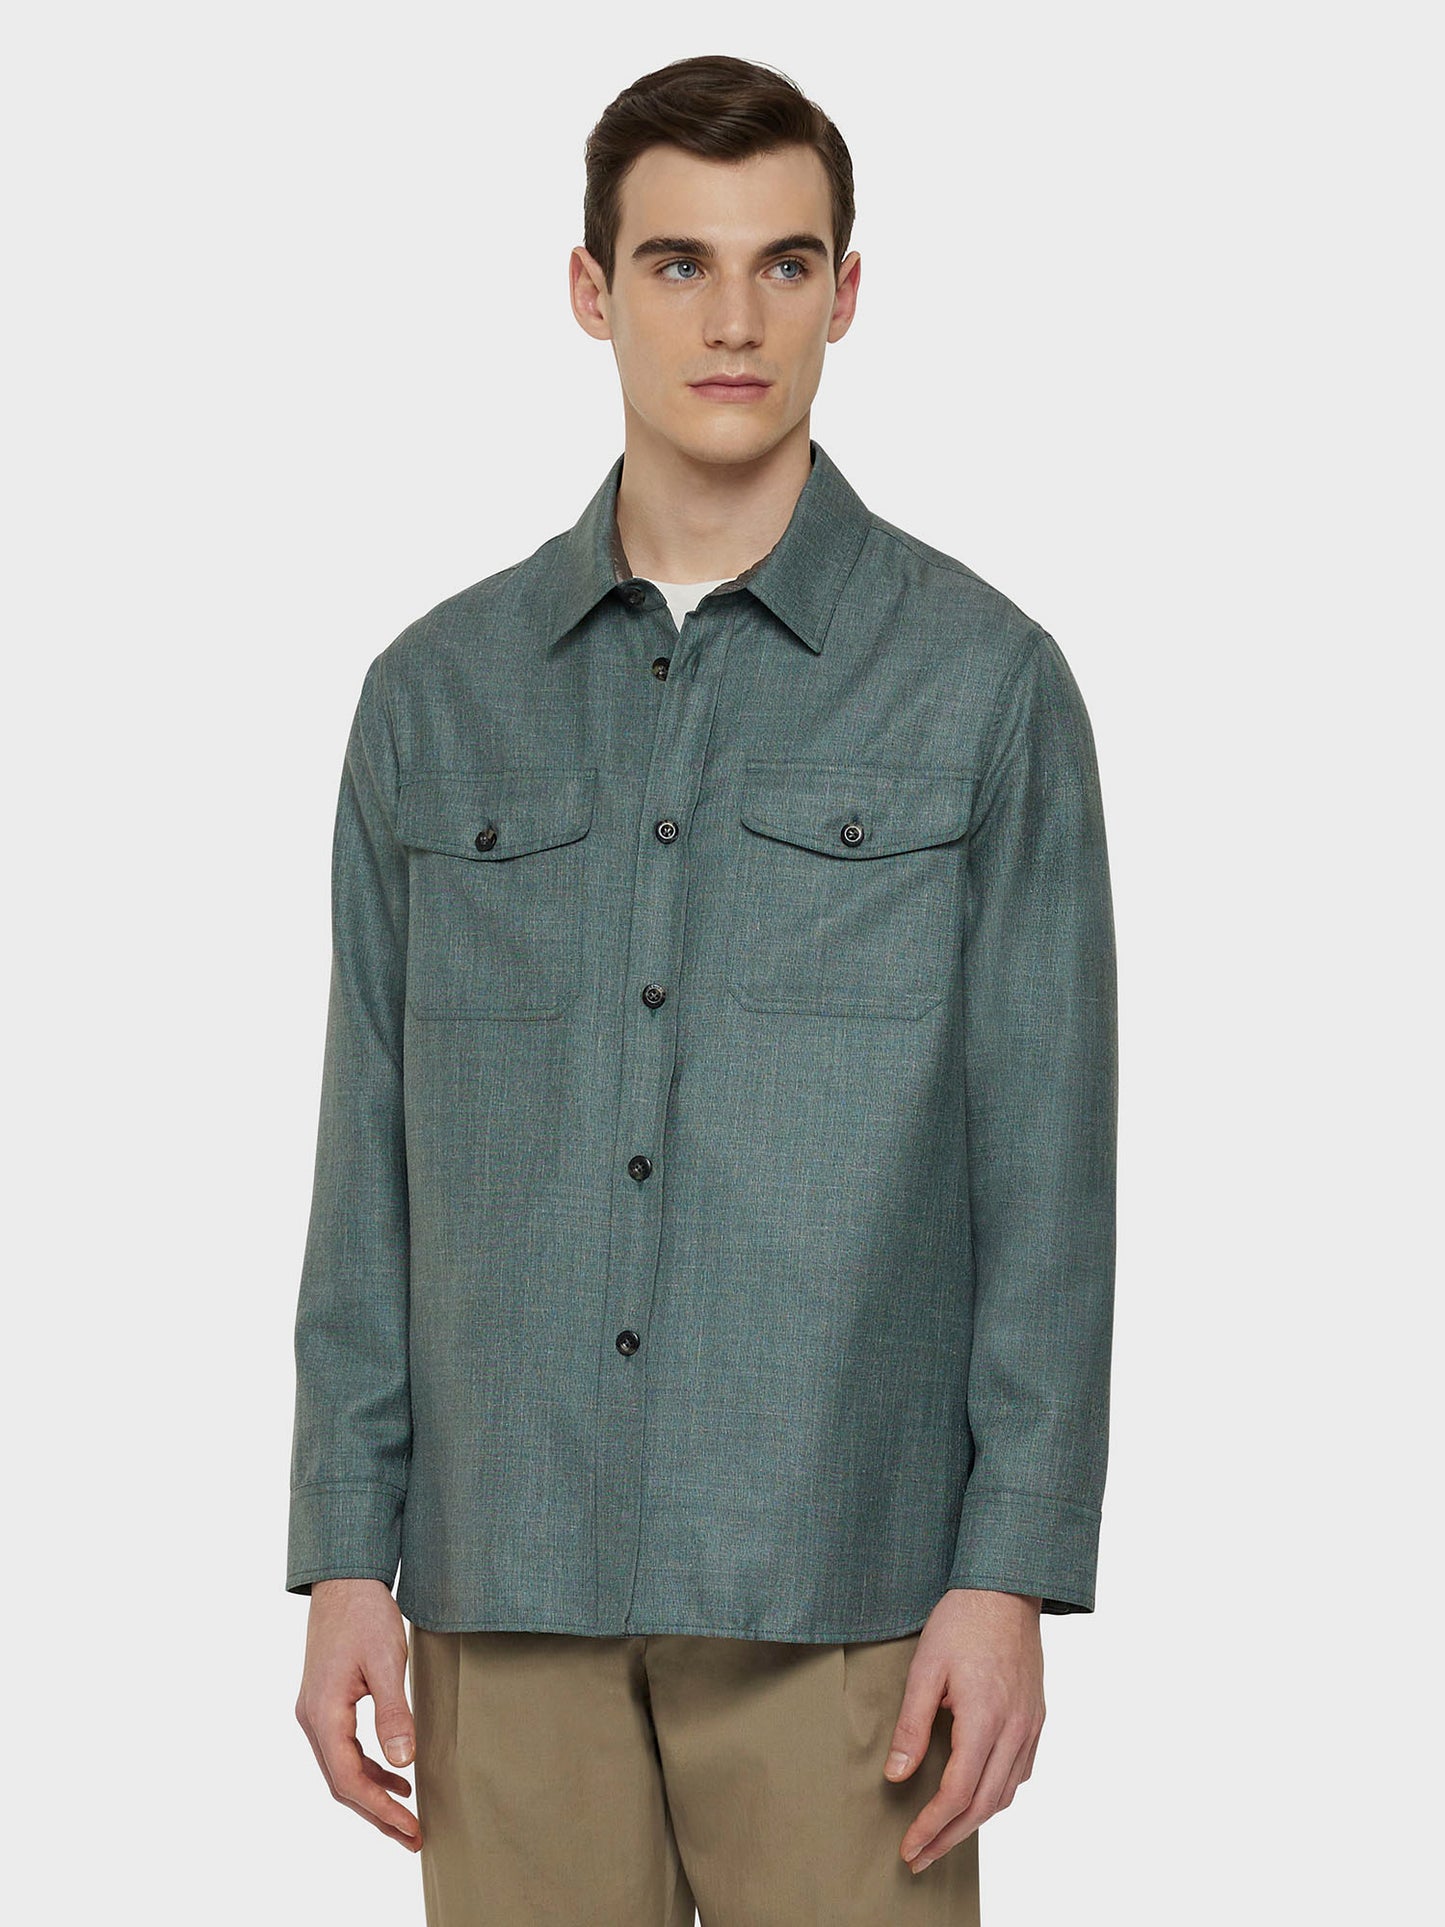 Caruso Menswear Abbigliamento Uomo Overshirt in lana, seta e lino verde indossato front